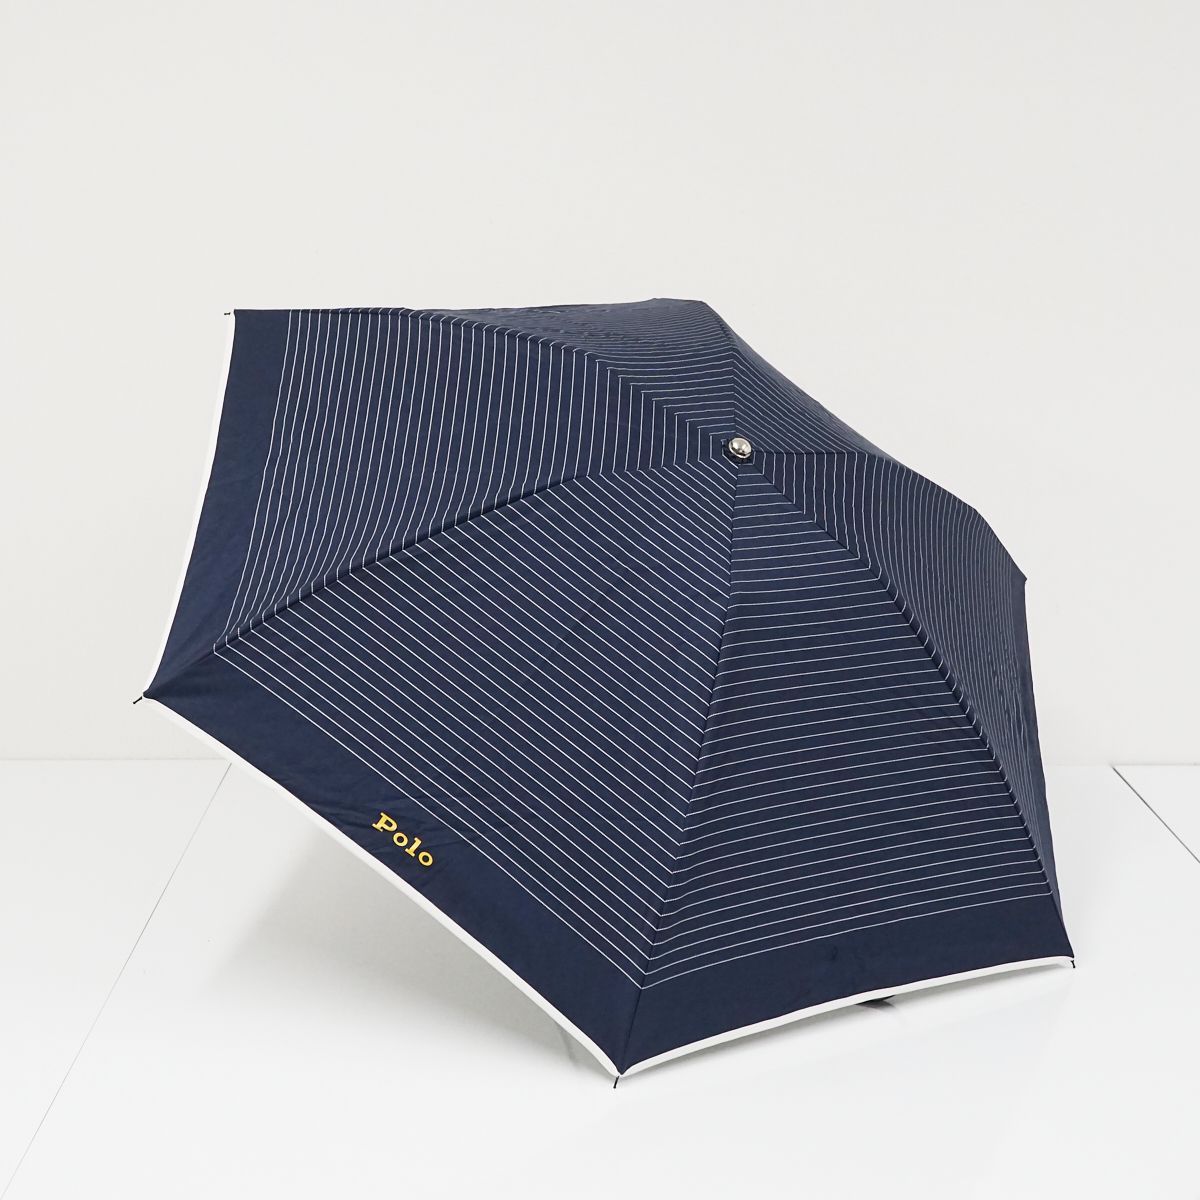 ポロラルフローレン 花柄 晴雨兼用 折り畳み傘 ネイビー 55cm - 小物